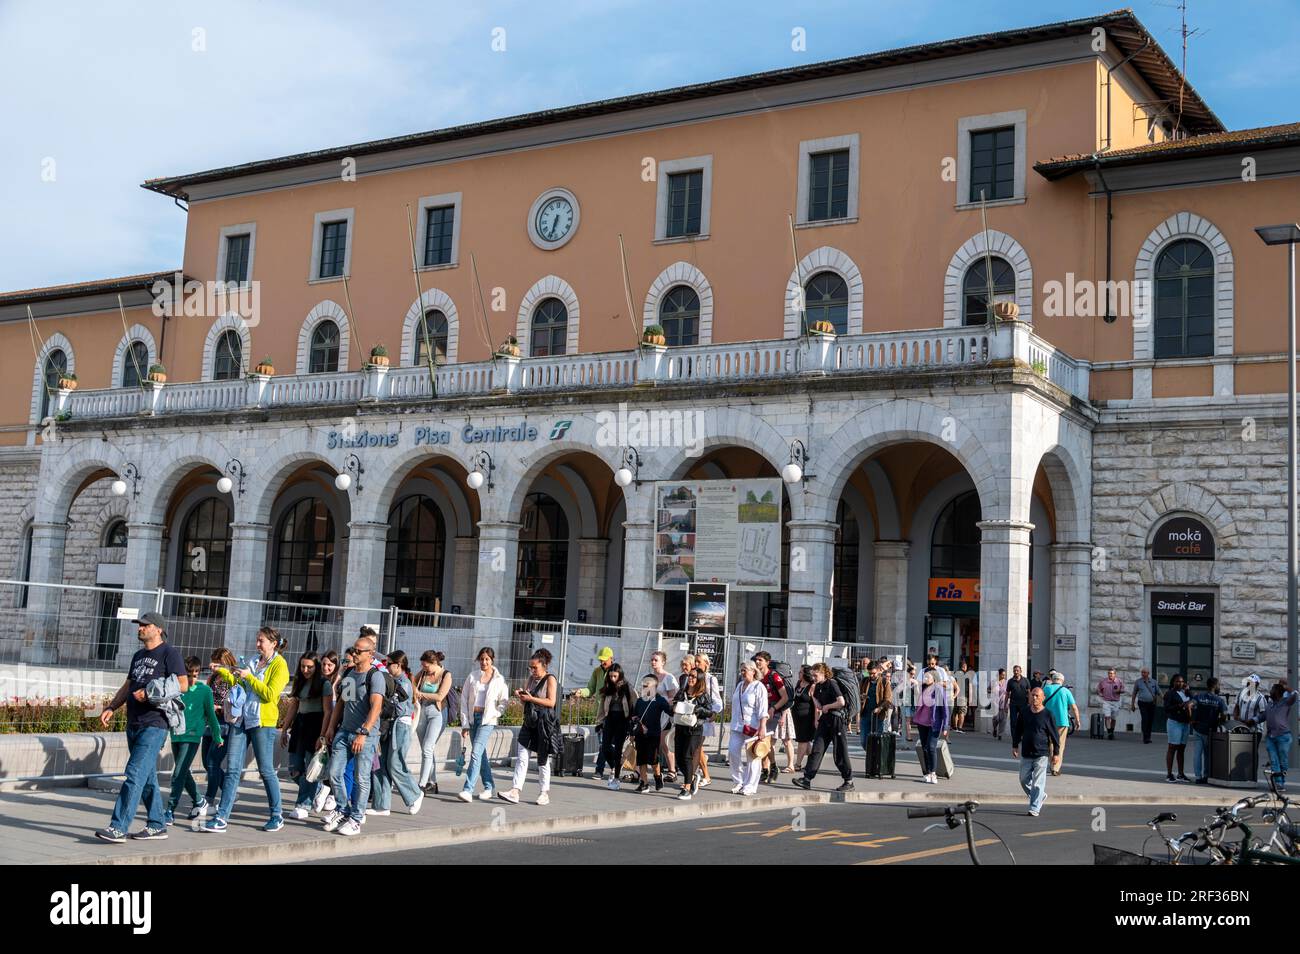 La stazione di Pisa Central è una stazione ferroviaria italiana situata a Pisa, nella regione Toscana. Foto Stock